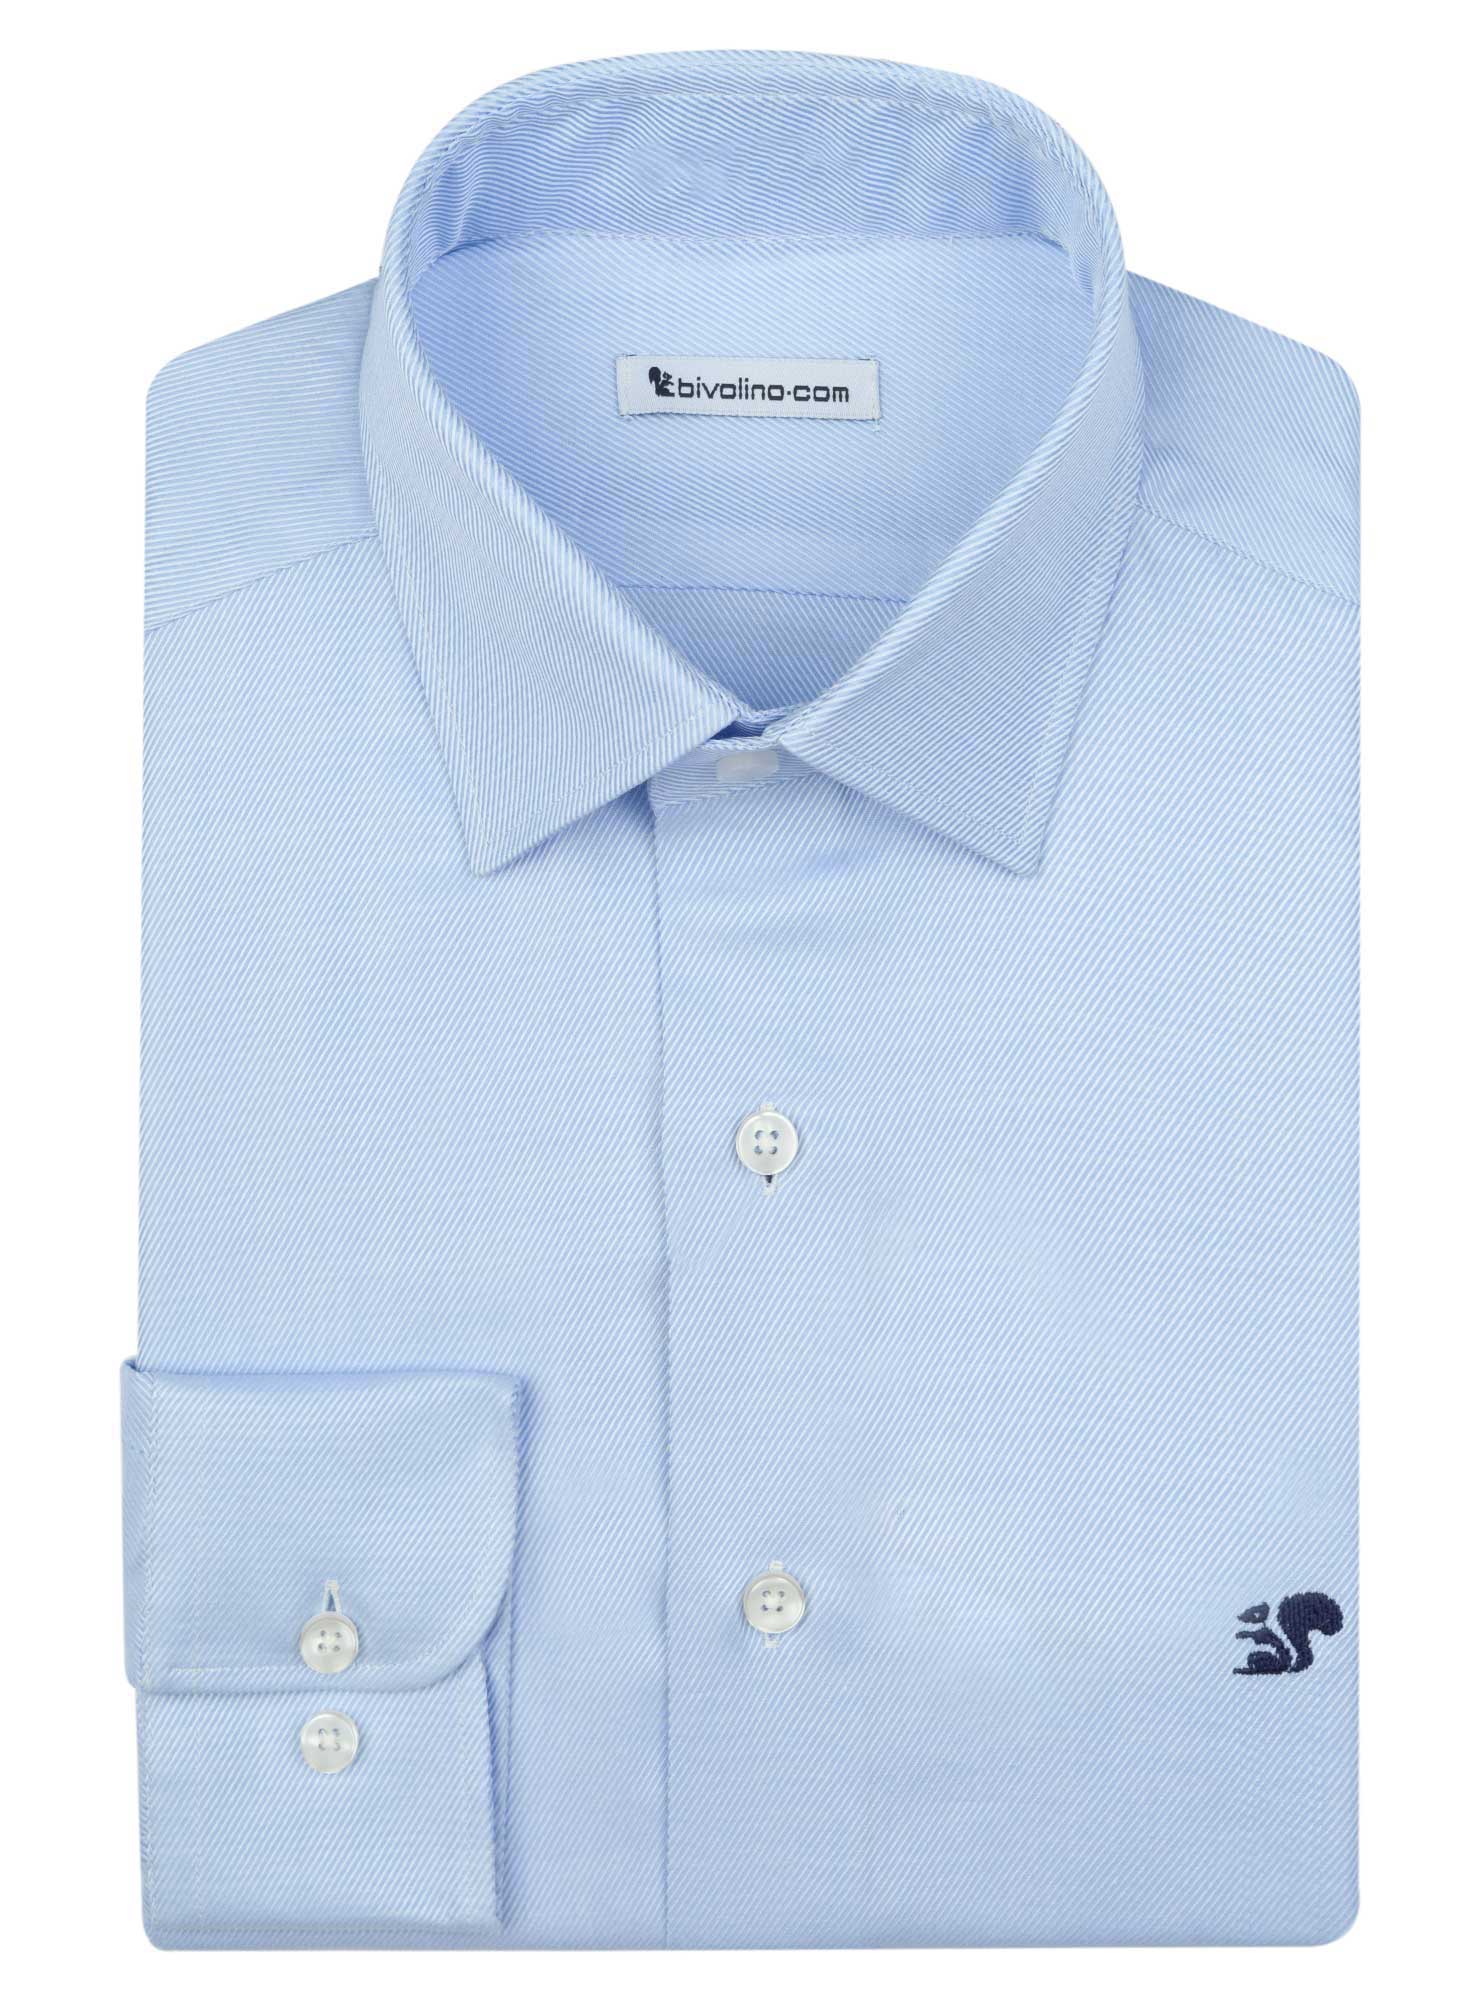 PISA - hemelsblauwe Twill 2fold heren overhemd op maat - ROCOLI 4